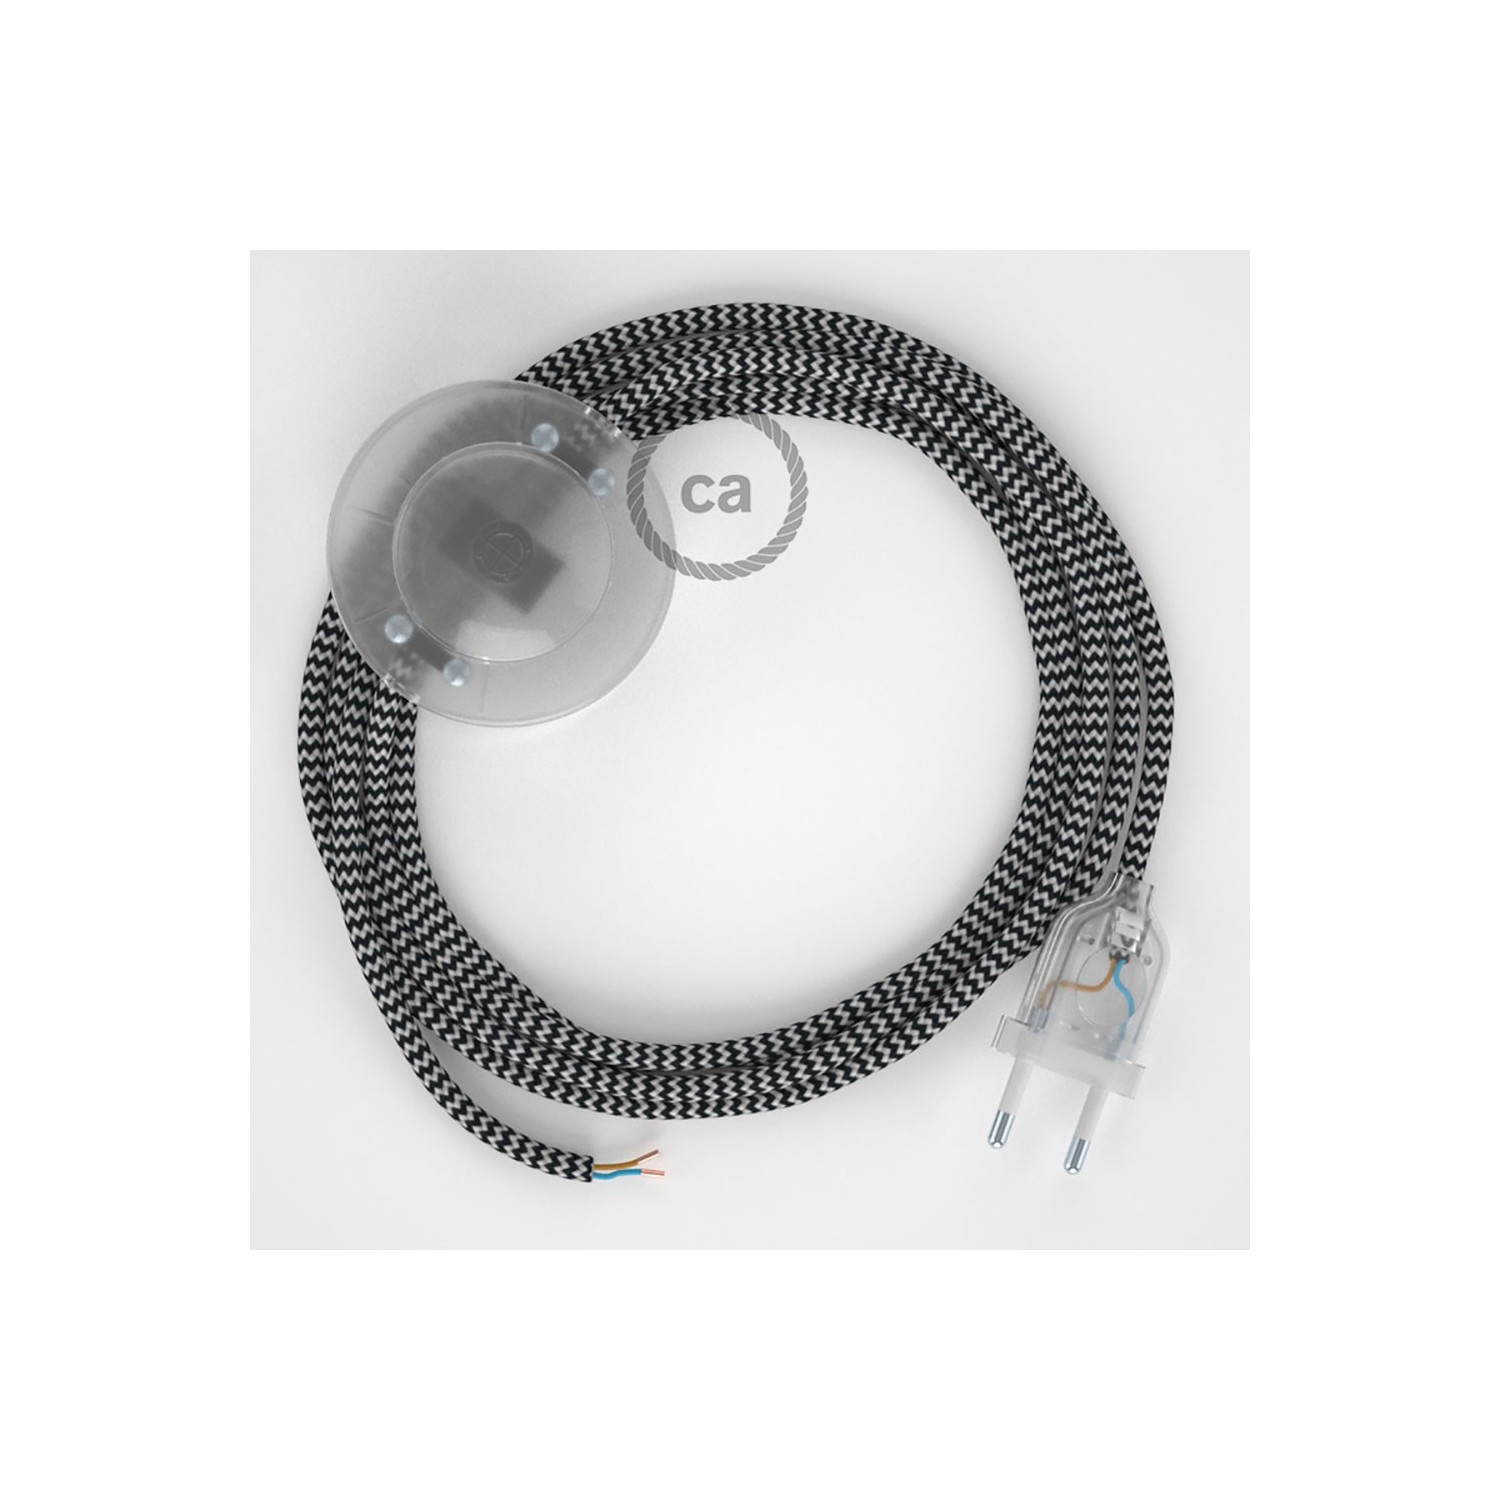 Cordon pour lampadaire, câble RZ04 Effet Soie ZigZag Blanc-Noir 3 m. Choisissez la couleur de la fiche et de l'interrupteur!